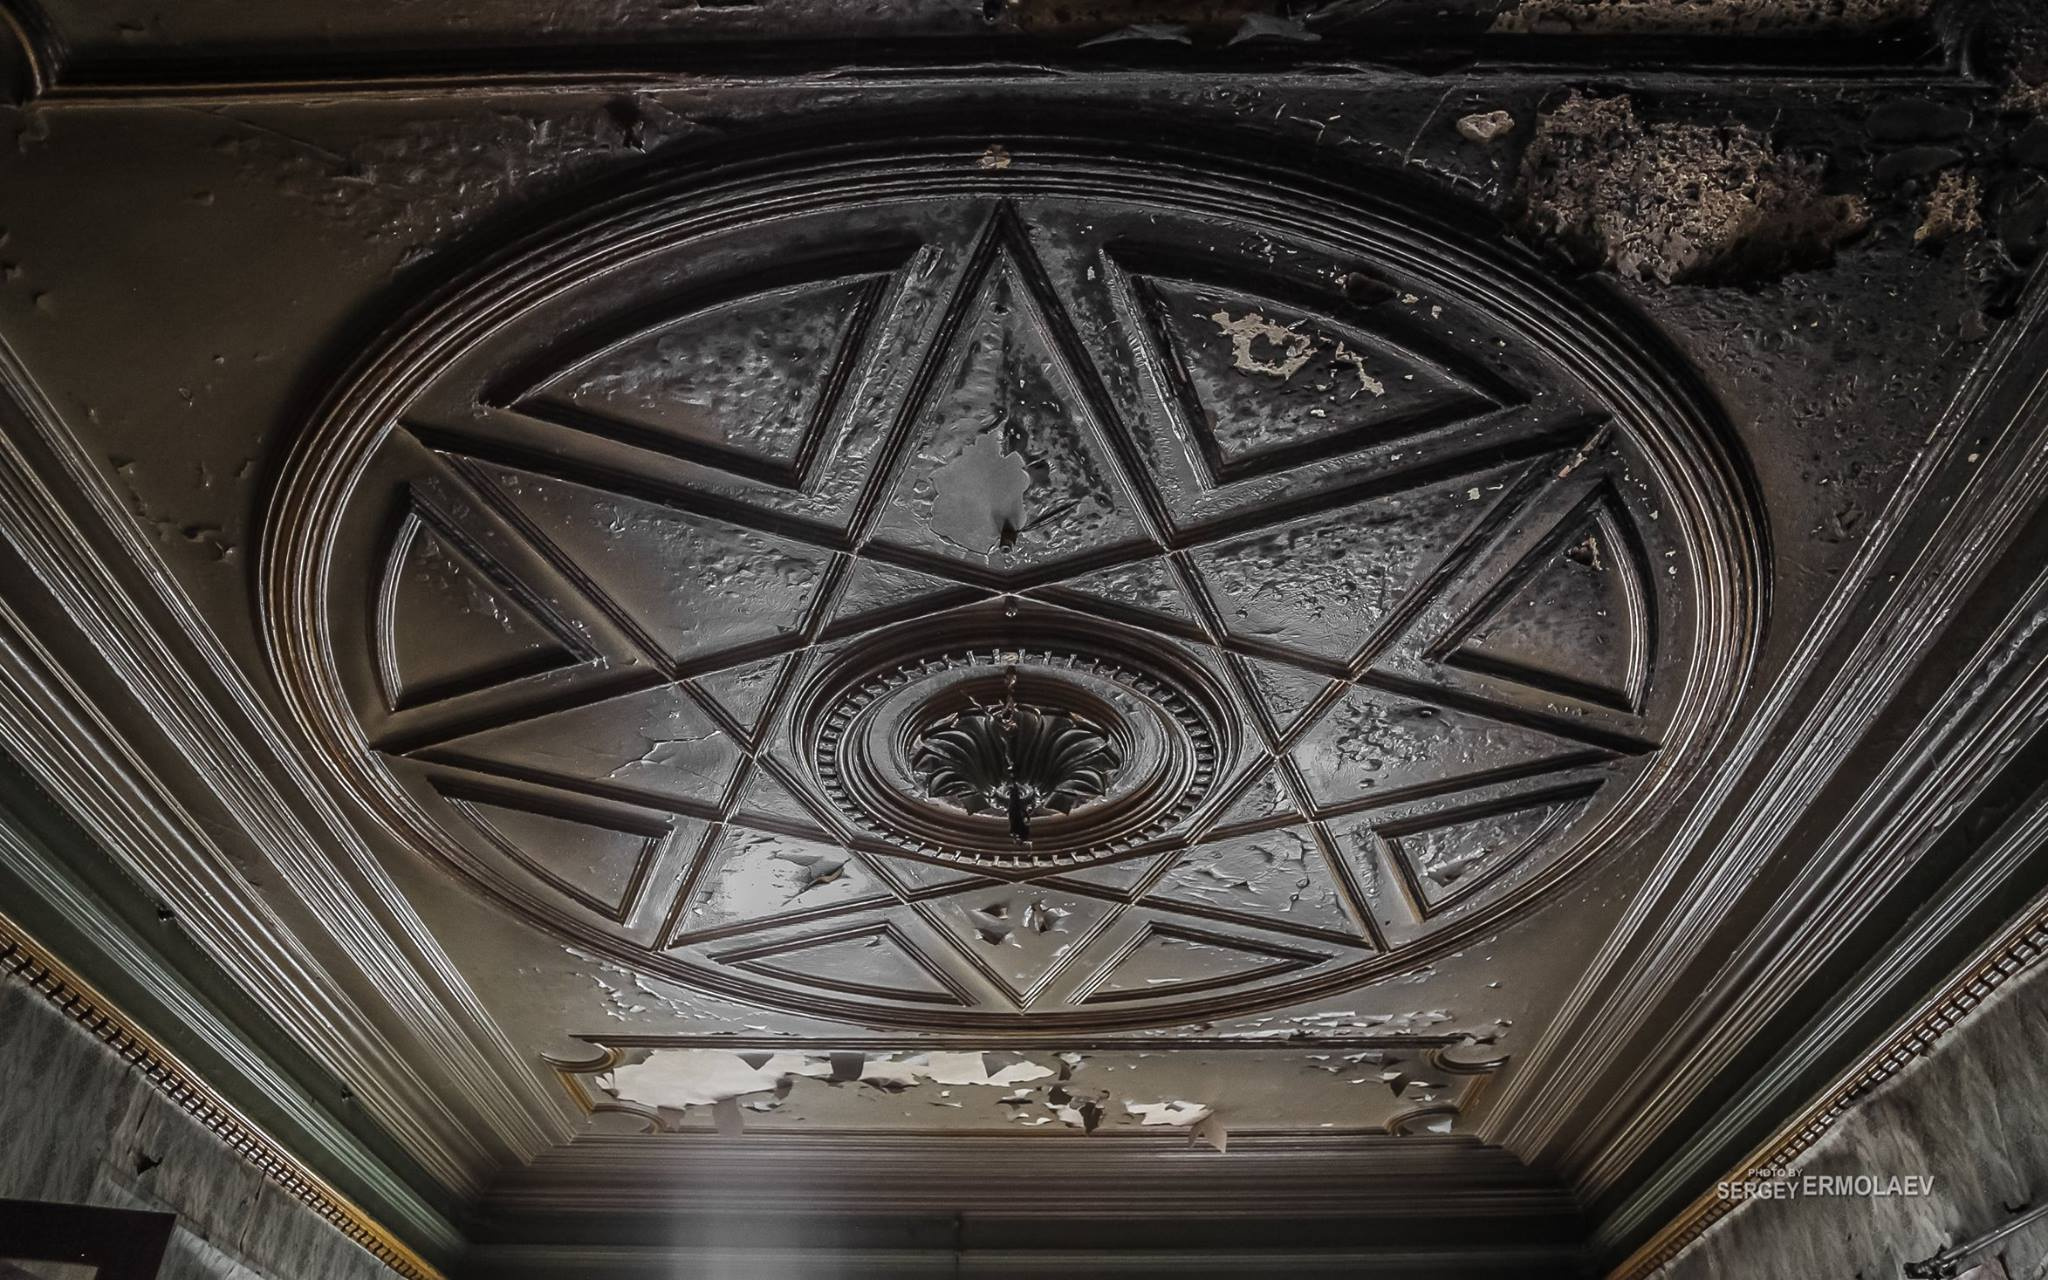 Красивая деталь в доме. Необычный потолок с лепниной в виде пиктограммы в комнате второго этажа. Фото Сергея Ермолаева. Апрель 2017